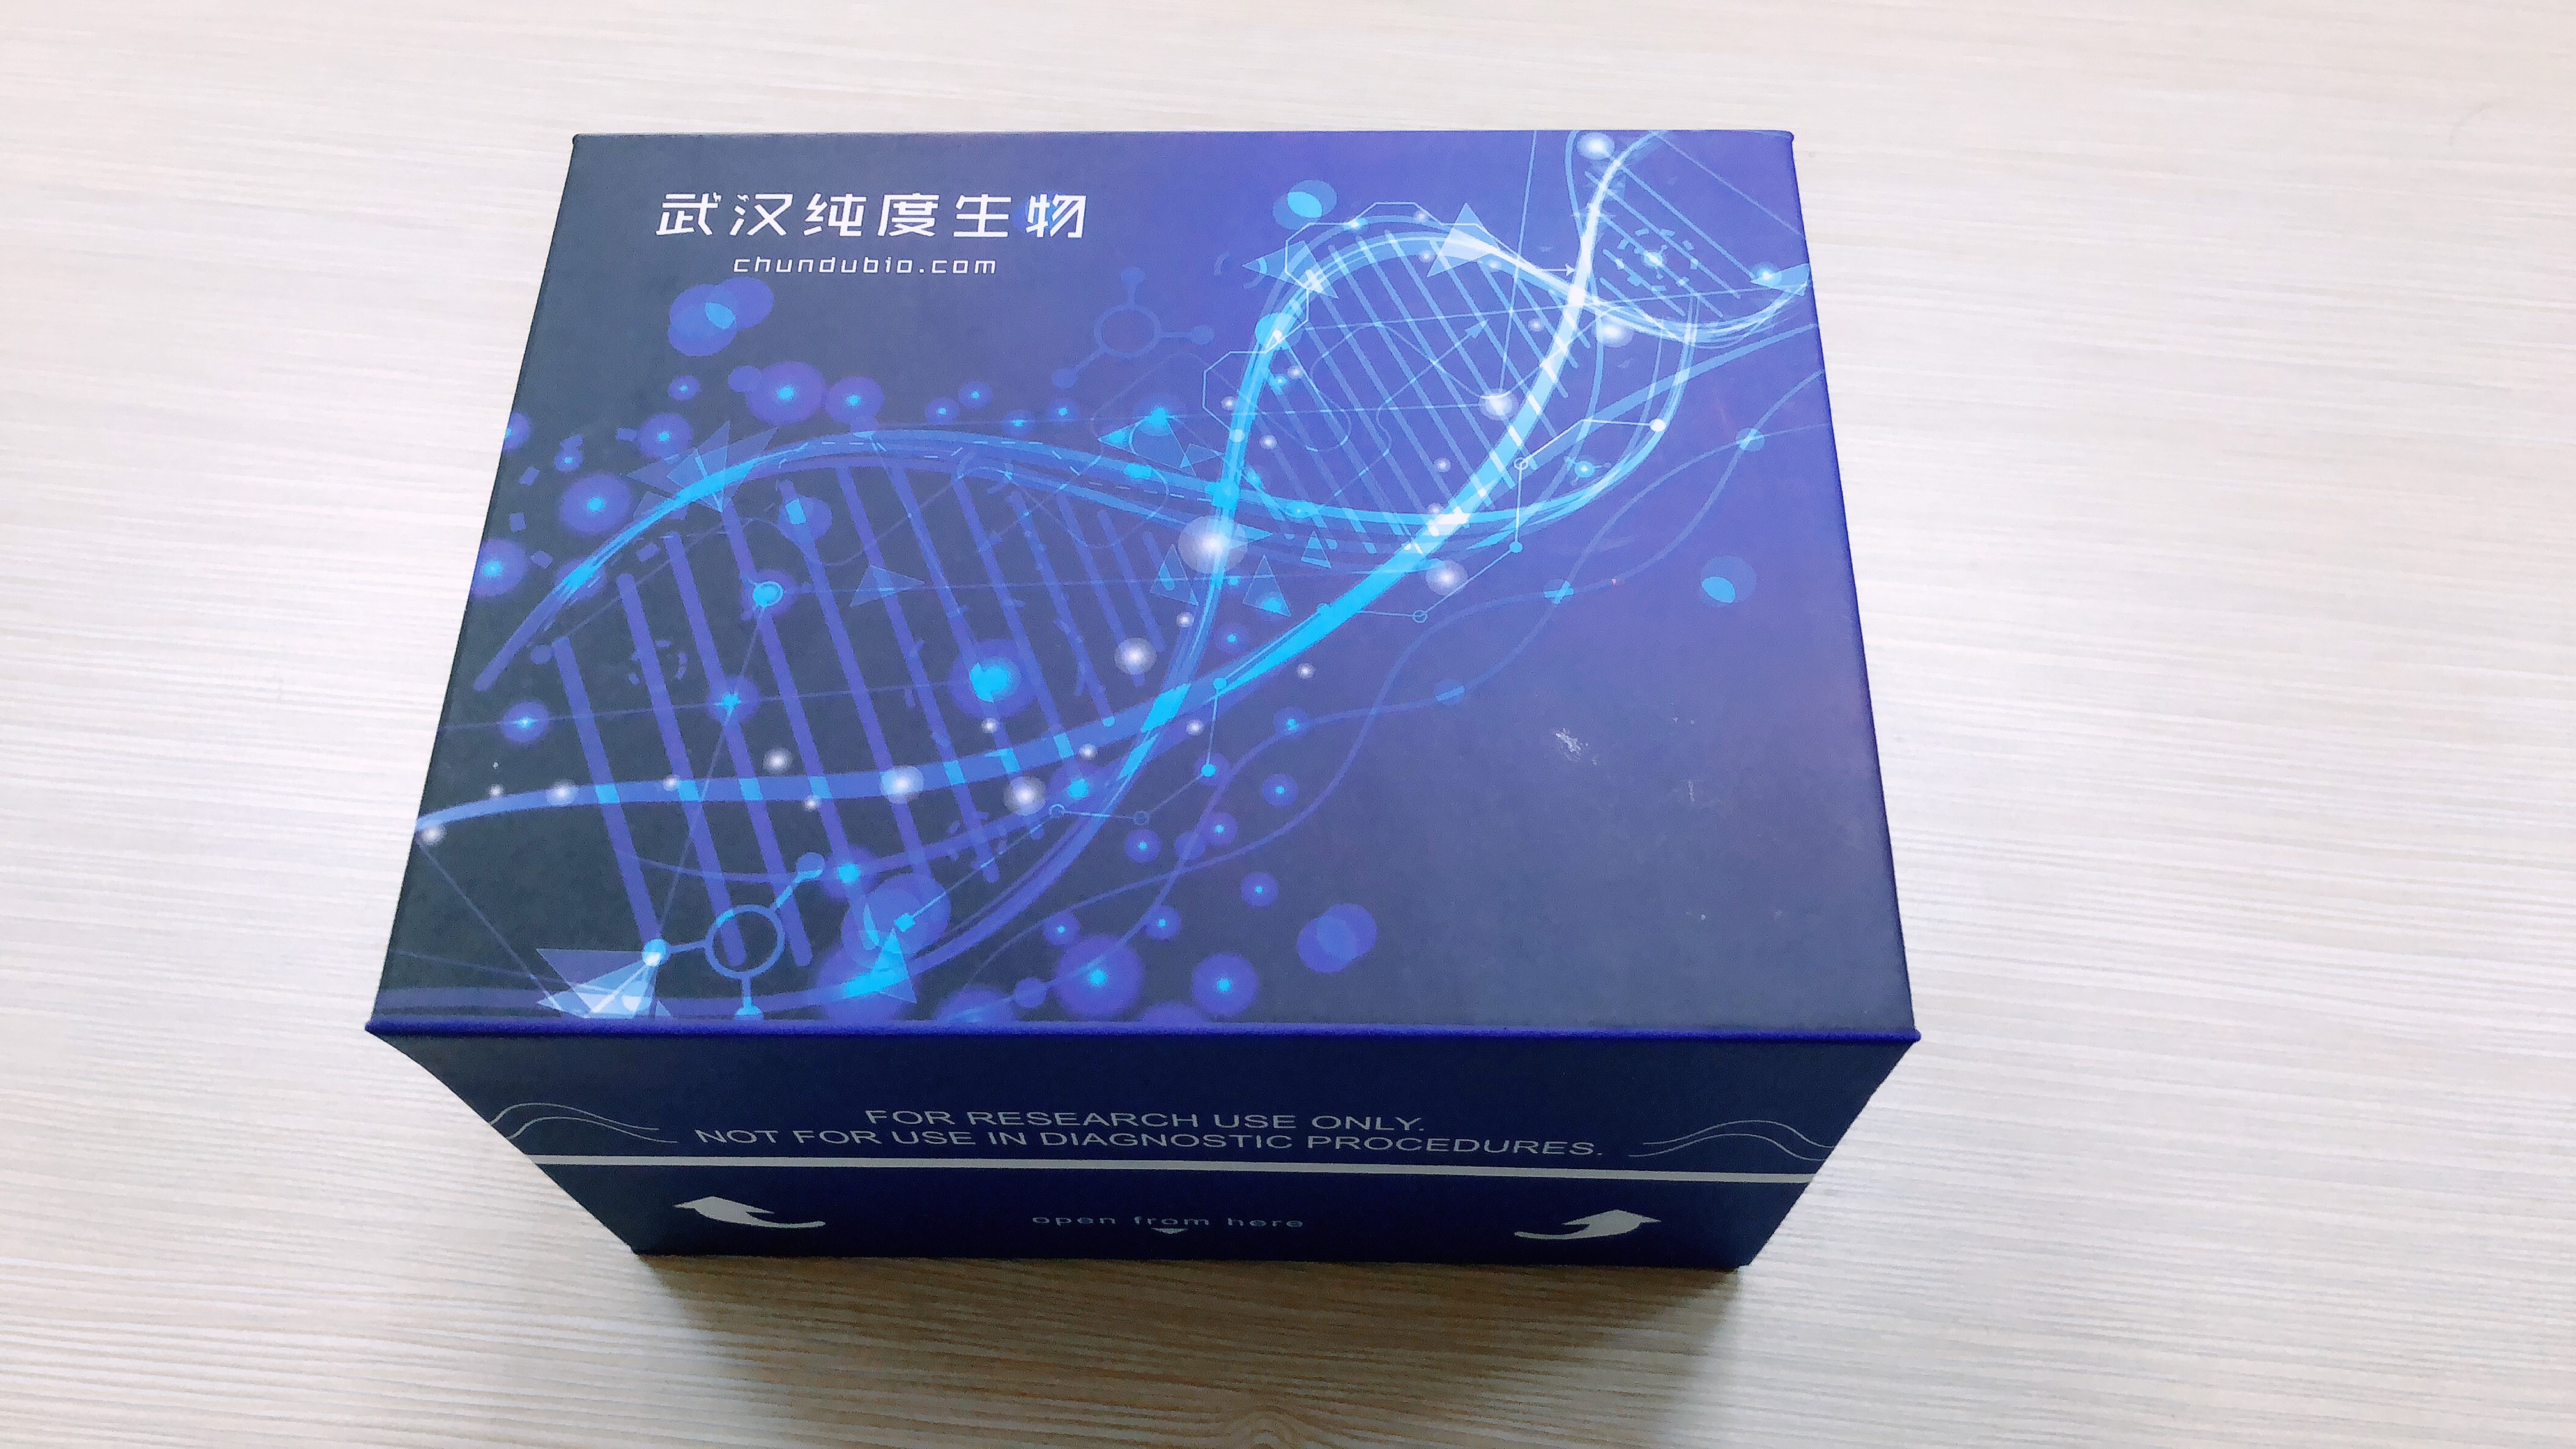 丙氨酸氨基转移酶 (谷丙转氨酶/ALT/GPT) 测试盒 (赖氏法)微板法